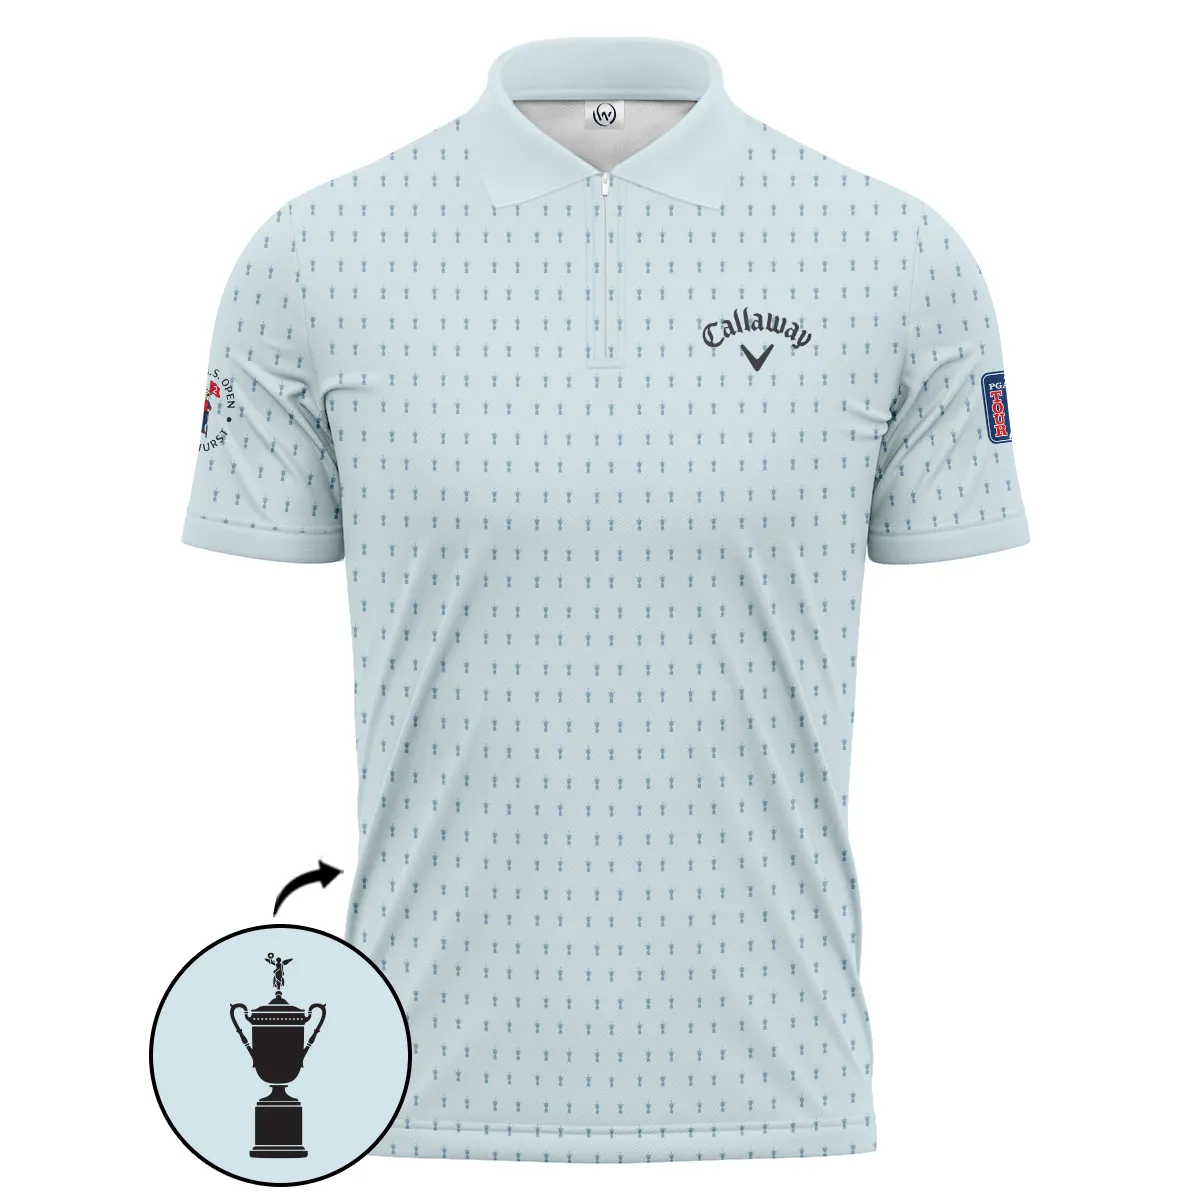 Golf Pattern Cup Light Blue Mix Green 124th U.S. Open Pinehurst Pinehurst Callaway Zipper Polo Shirt Style Classic